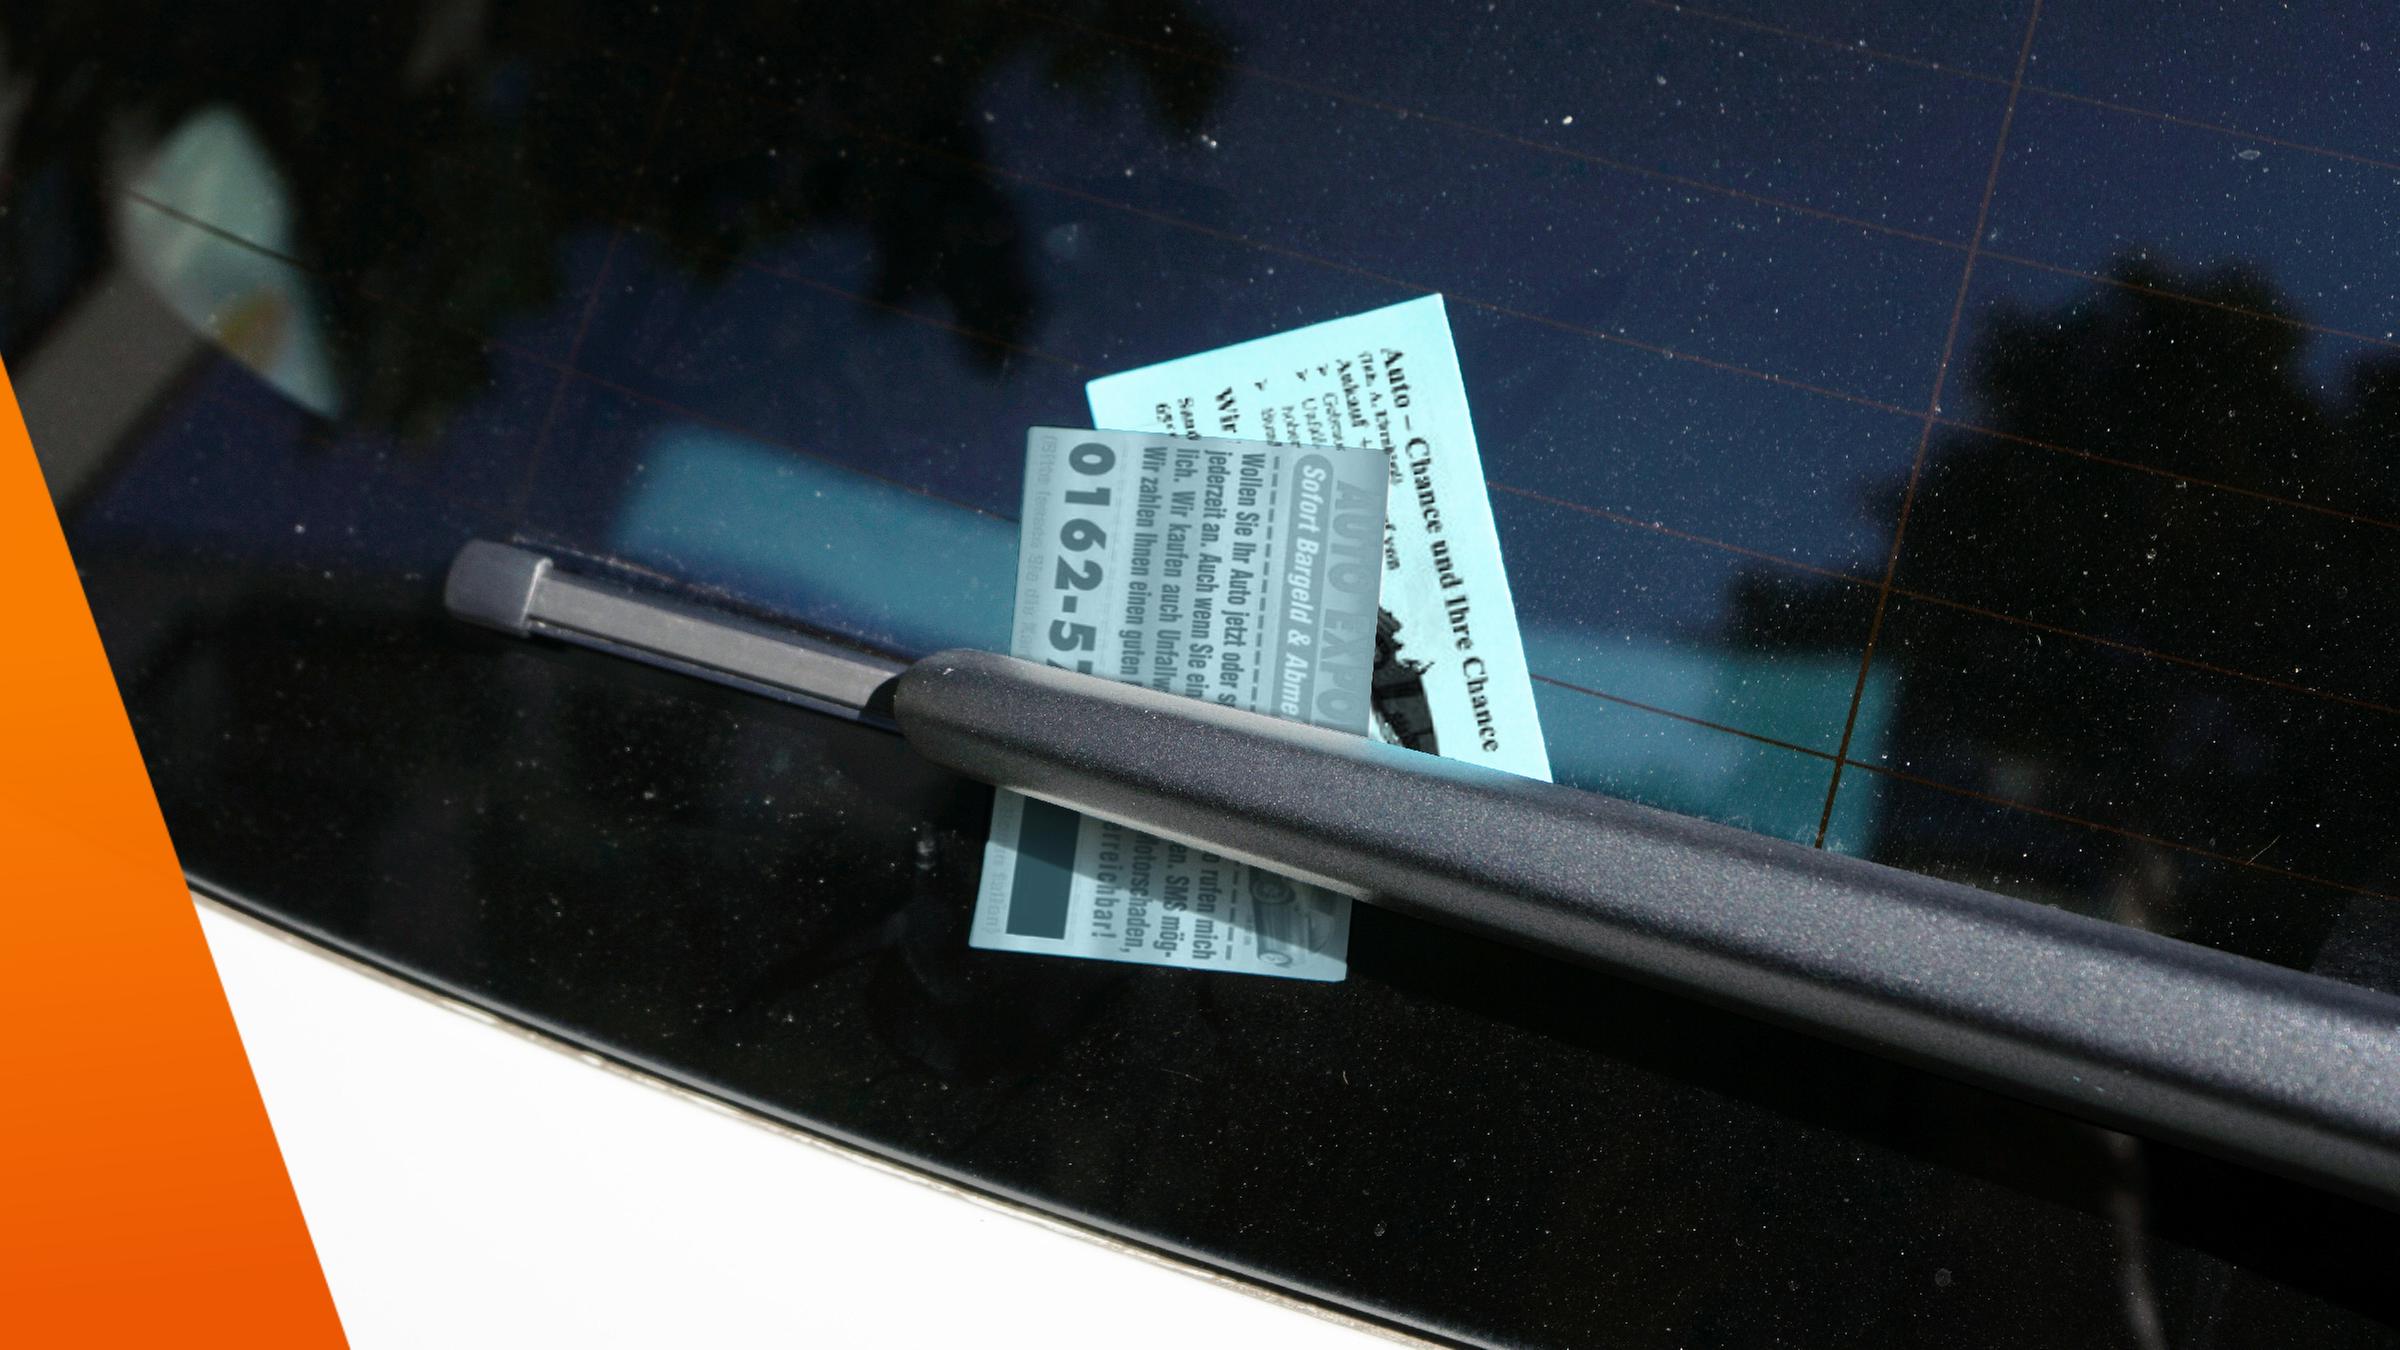 Visitenkarten von Autoankäufern stecken an der Windschutzscheibe